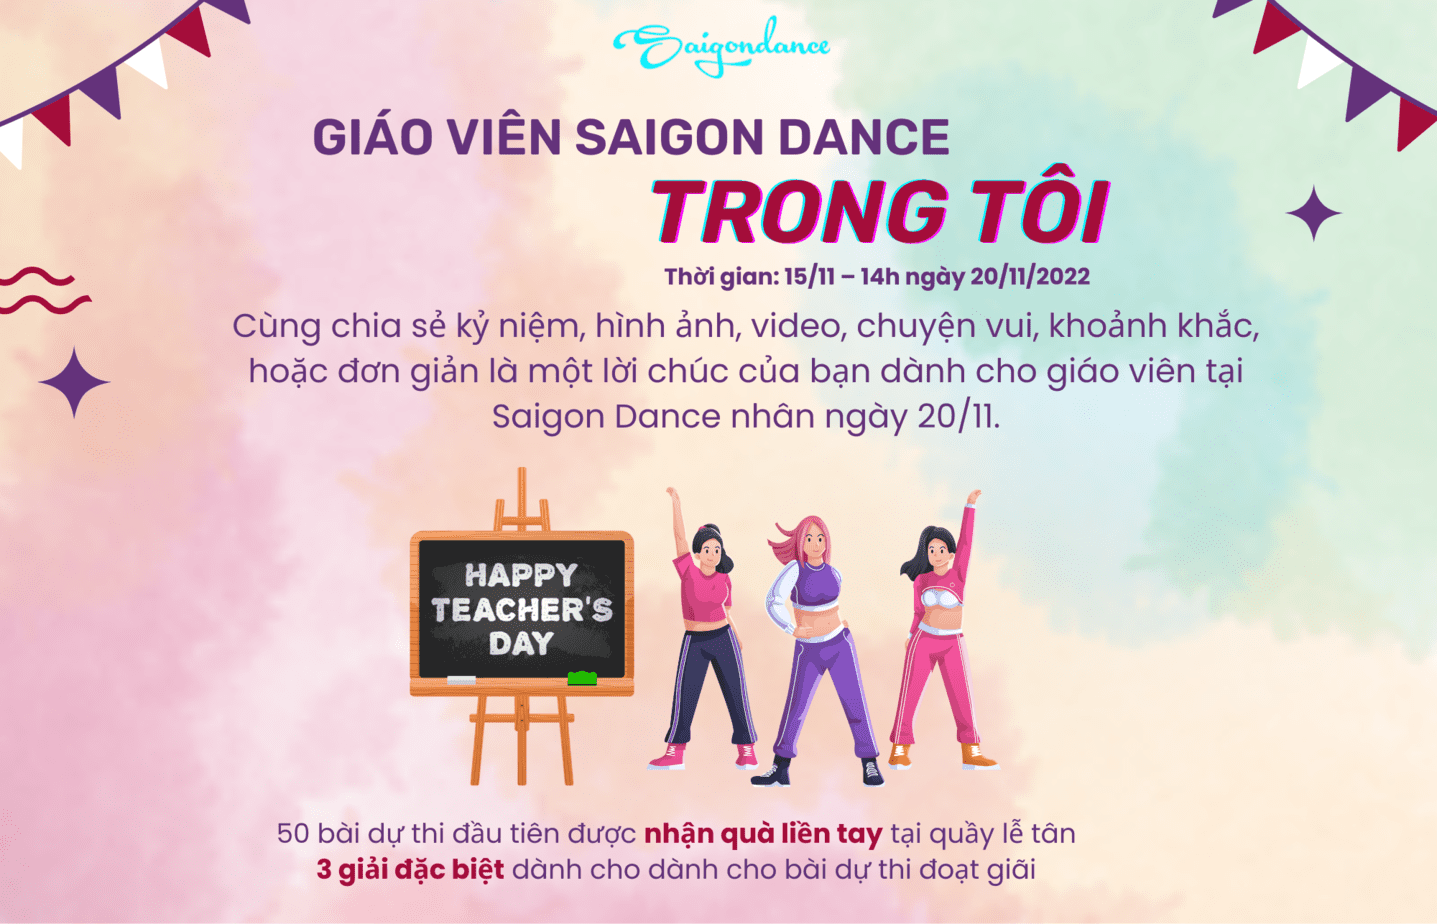 Nhận quà liền tay cùng Cuộc thi "Giáo viên Saigon Dance trong tôi" 16